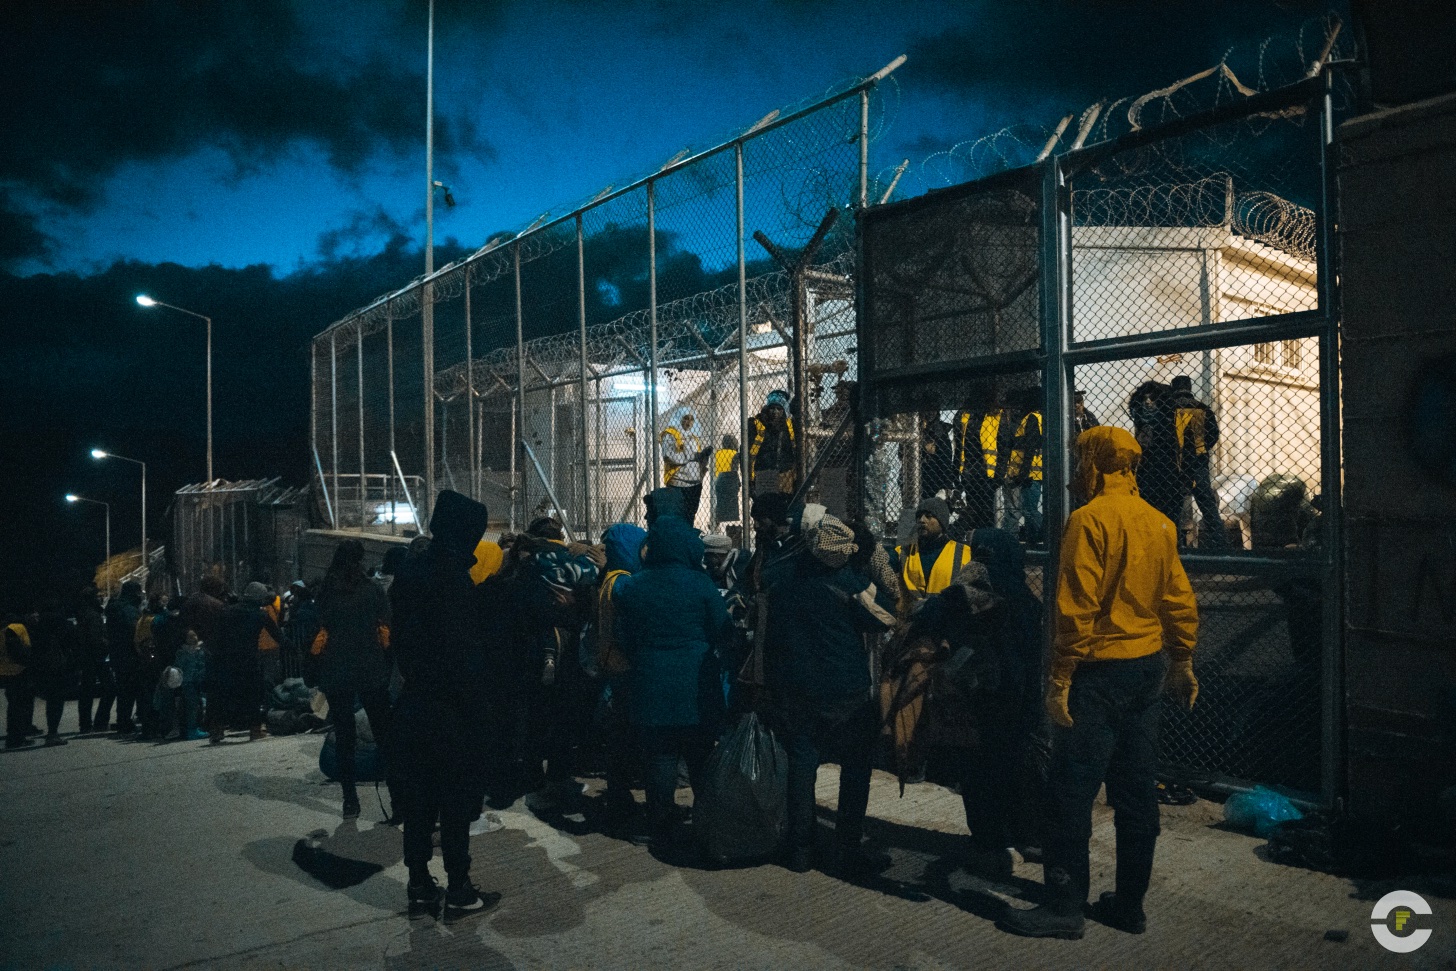 Grecia / Campo de Refugiados Mytilene / 2015 